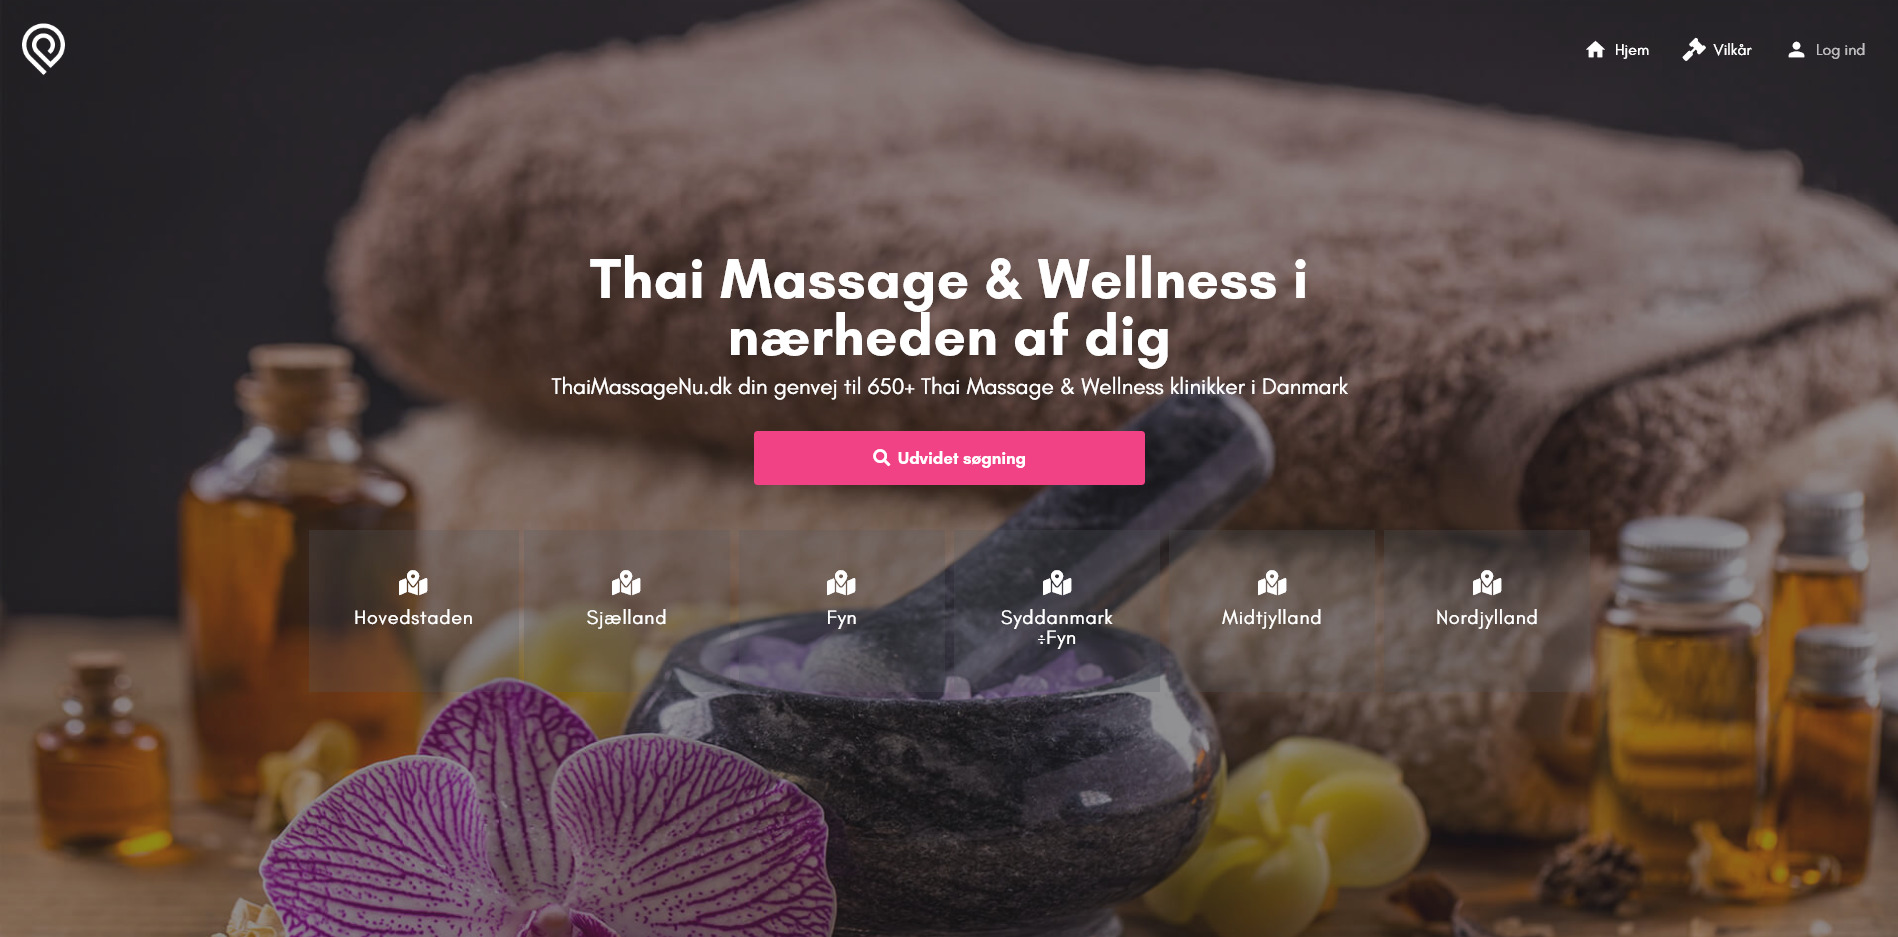 Nice Thai Massage | ThaiMassageNu.dk